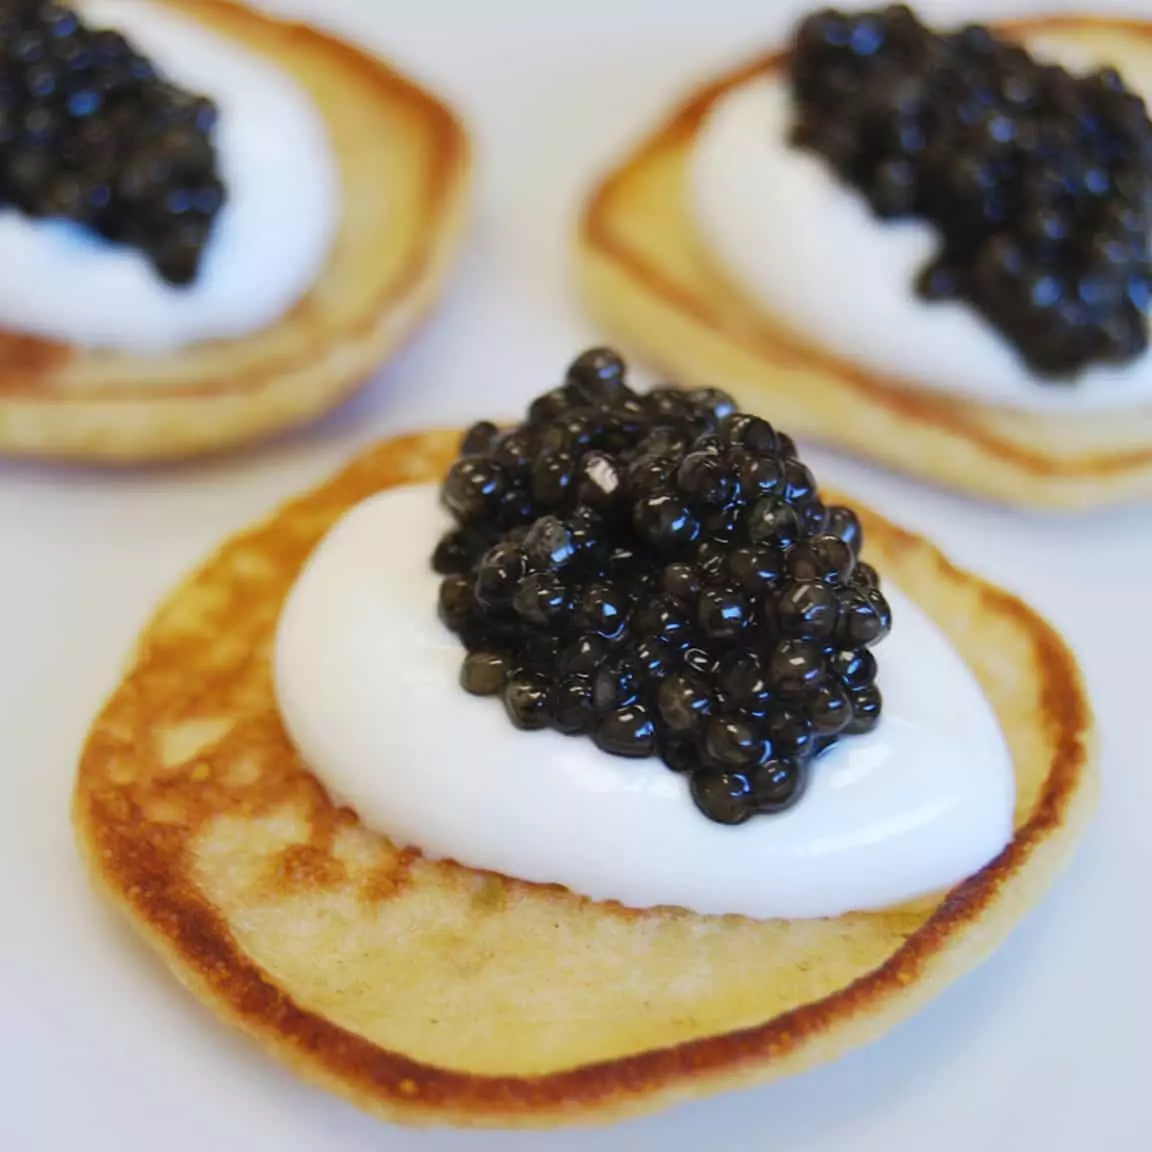 Caviar lori awọn ohun mimu